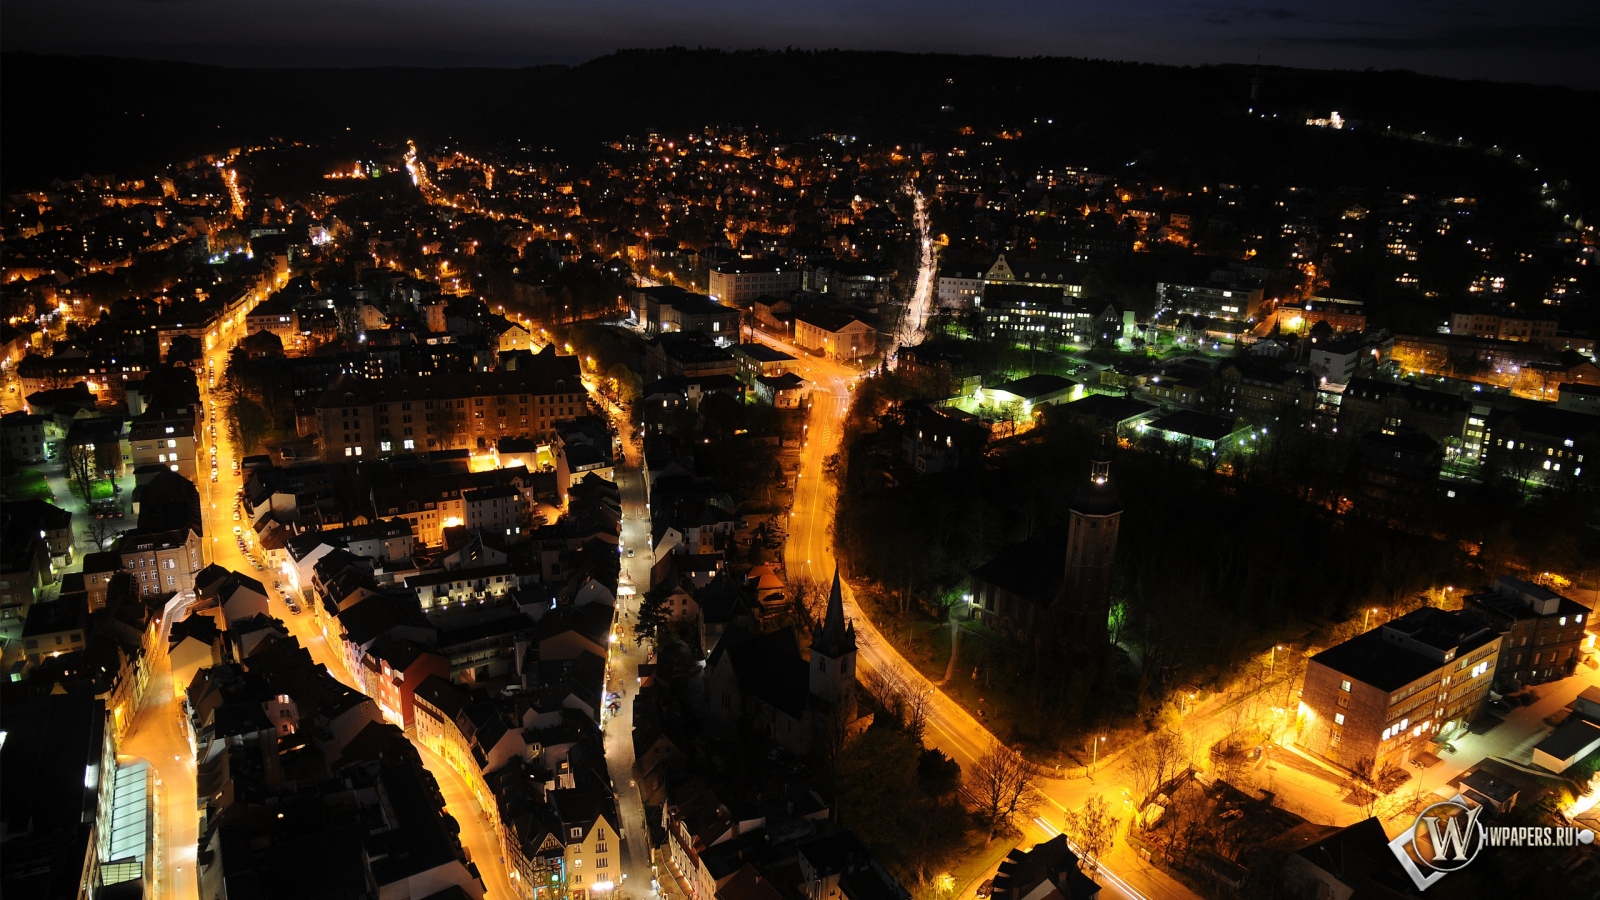 City at night 1600x900